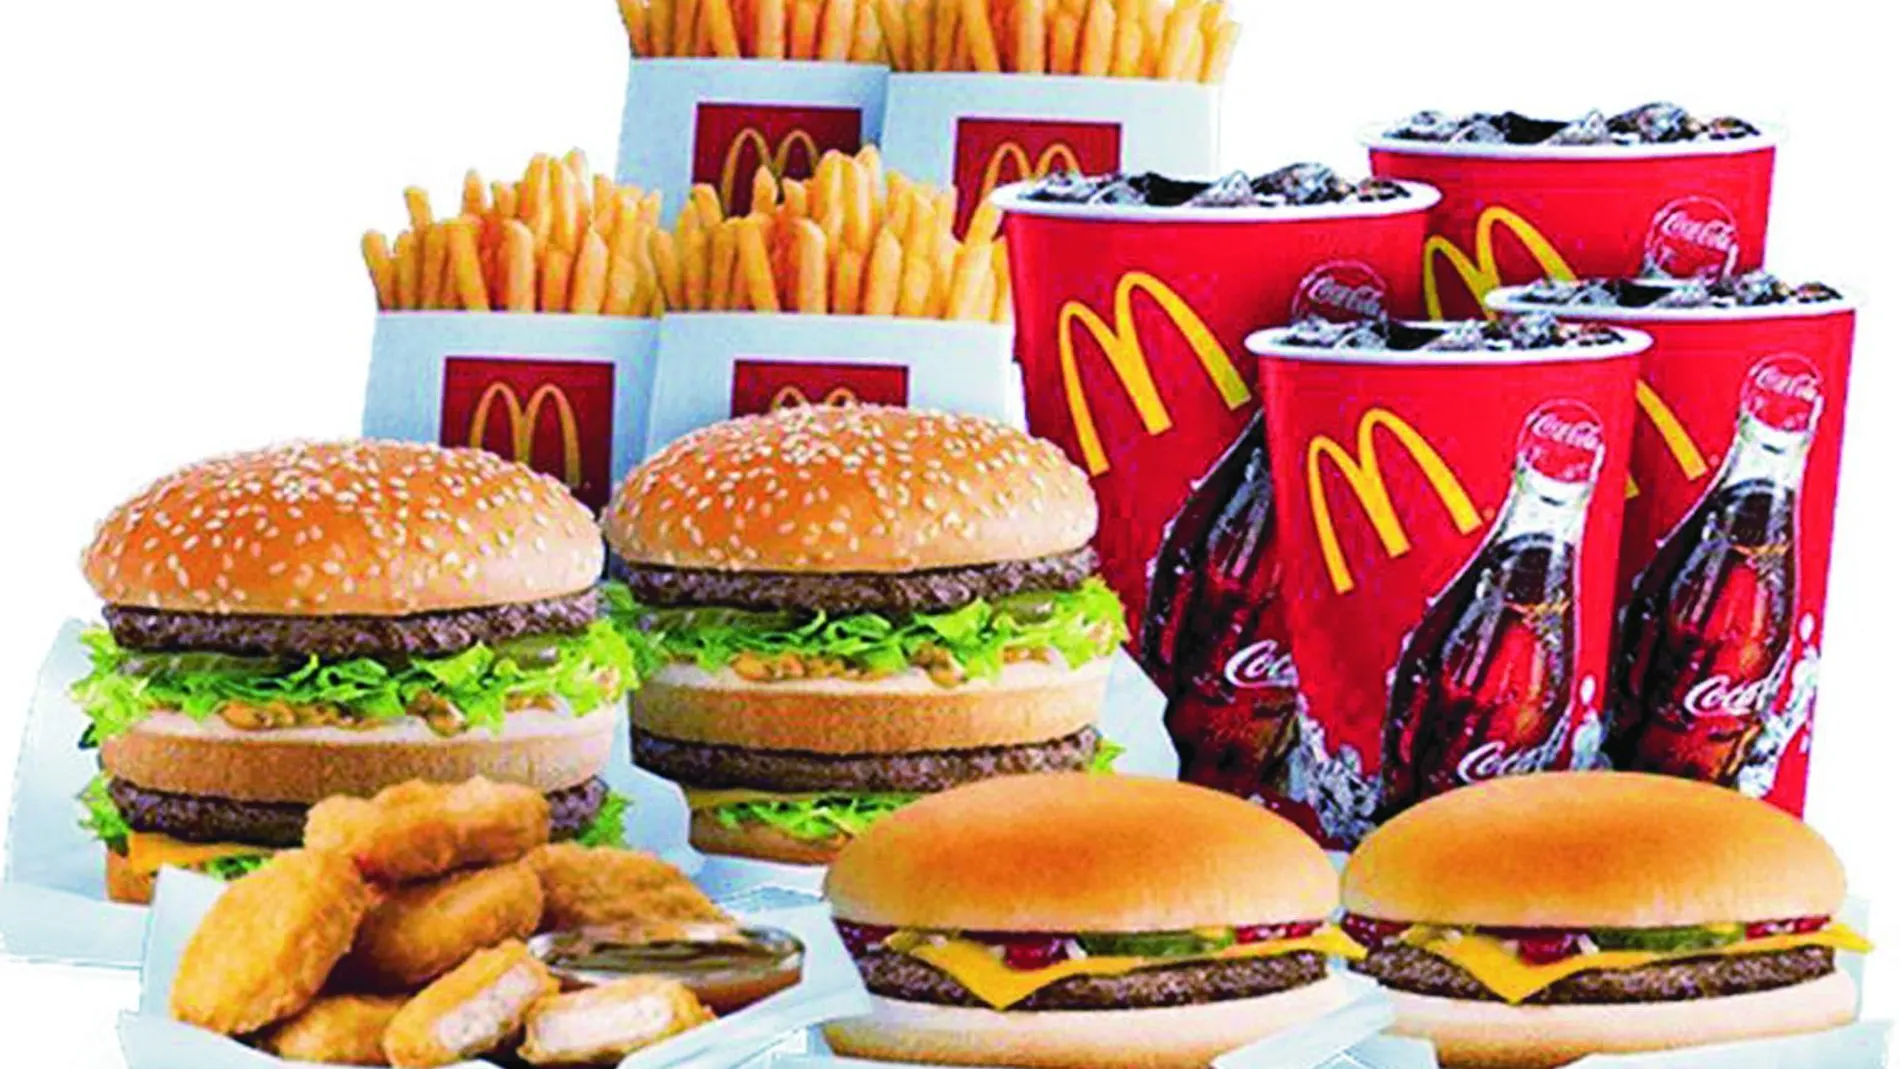 Según el reciente estudio publicado en «Journal ot the Academy of Nutrition and Dietetics», Macdonalds es un buen ejemplo de cadena rápida con intención de vender una imagen más «healthy» cuando luego no es así.